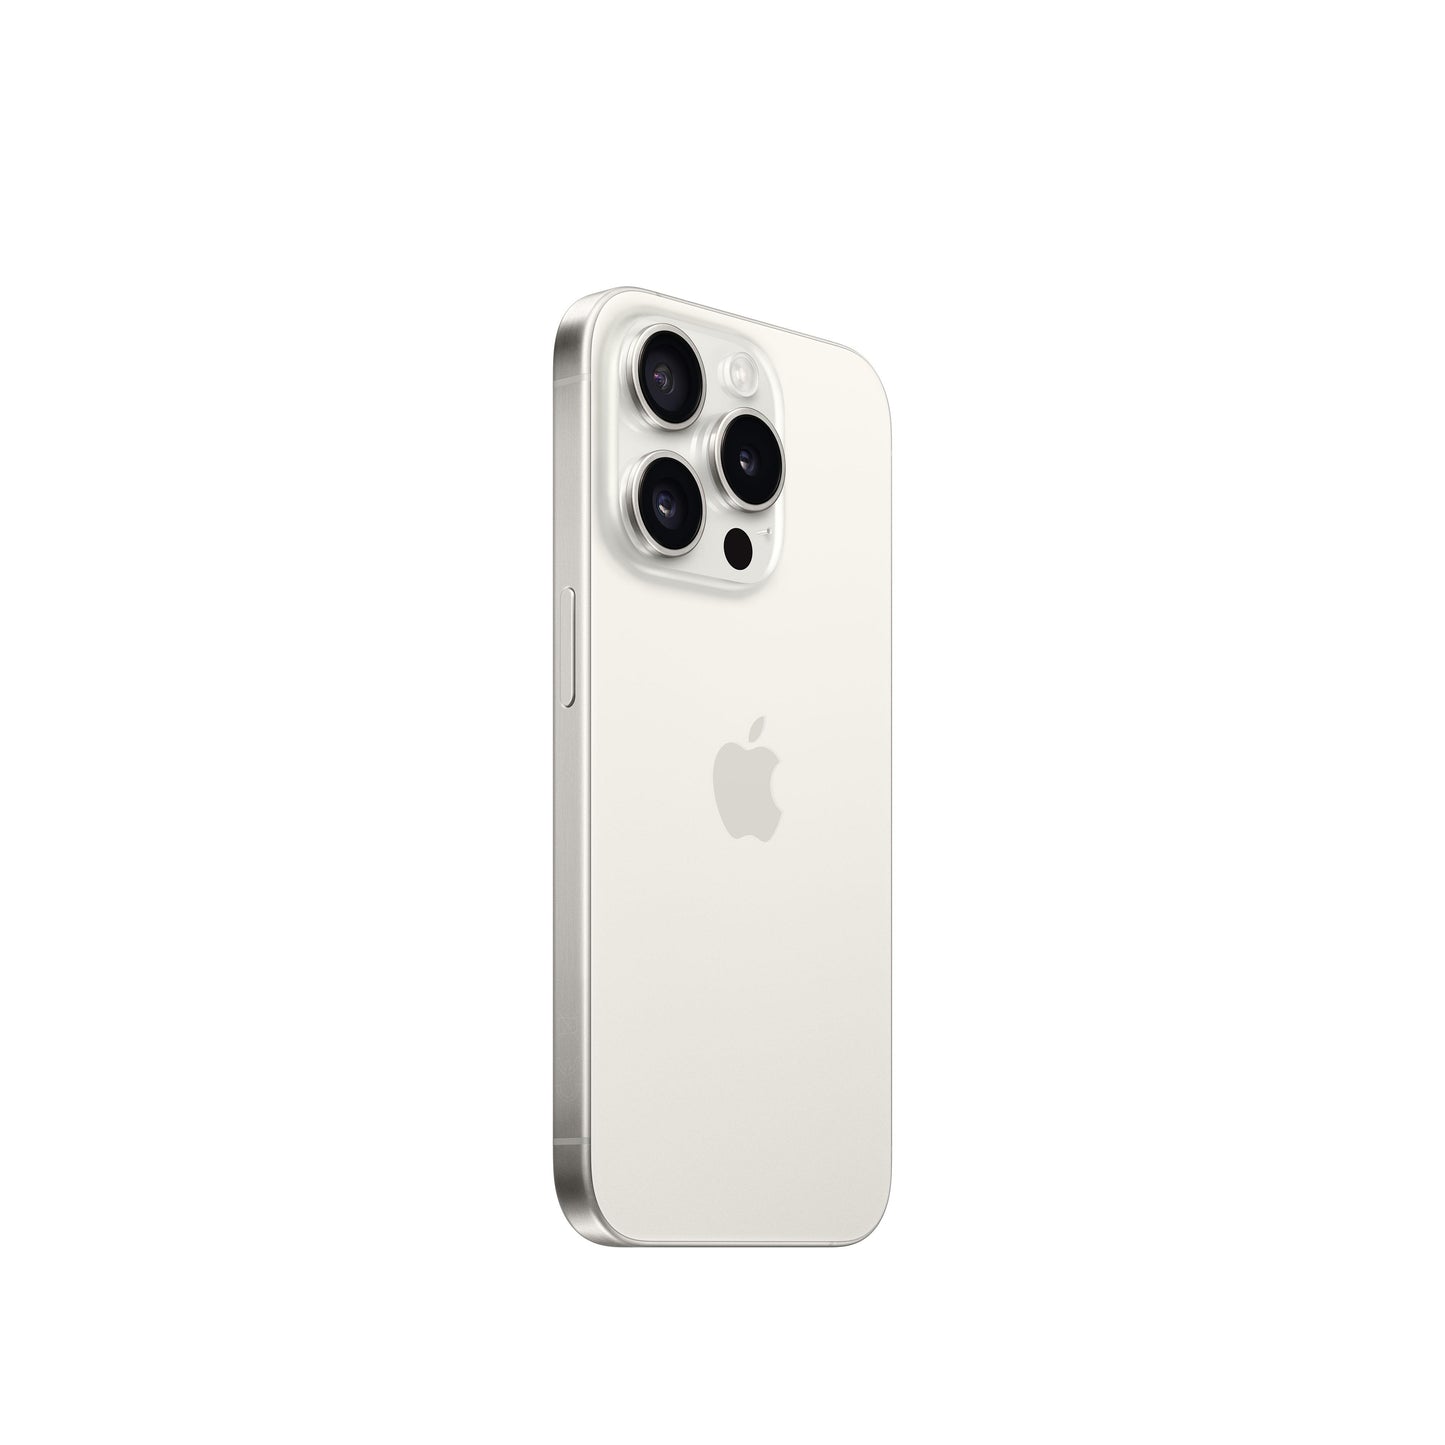 iPhone 15 Pro 128 GB Titanio blanco